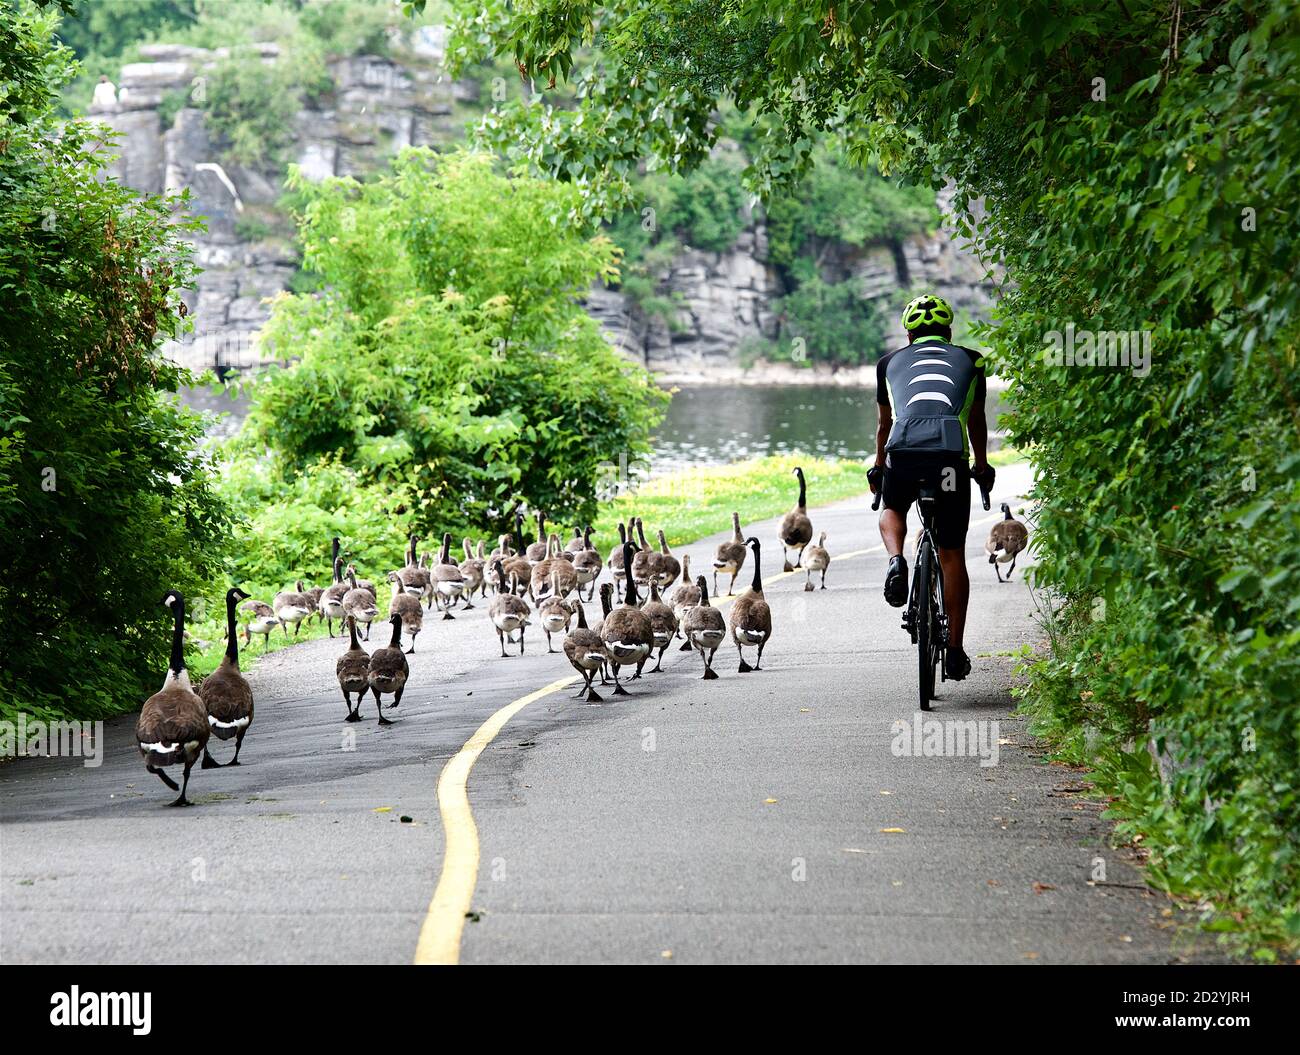 Ottawa, Canadá - 13 jul,2016: Biciclista que pasa grupo de patos cruzando la carretera en el parque en la ciudad. Aves silvestres caminando en el parque en Ottawa, Canadá Foto de stock